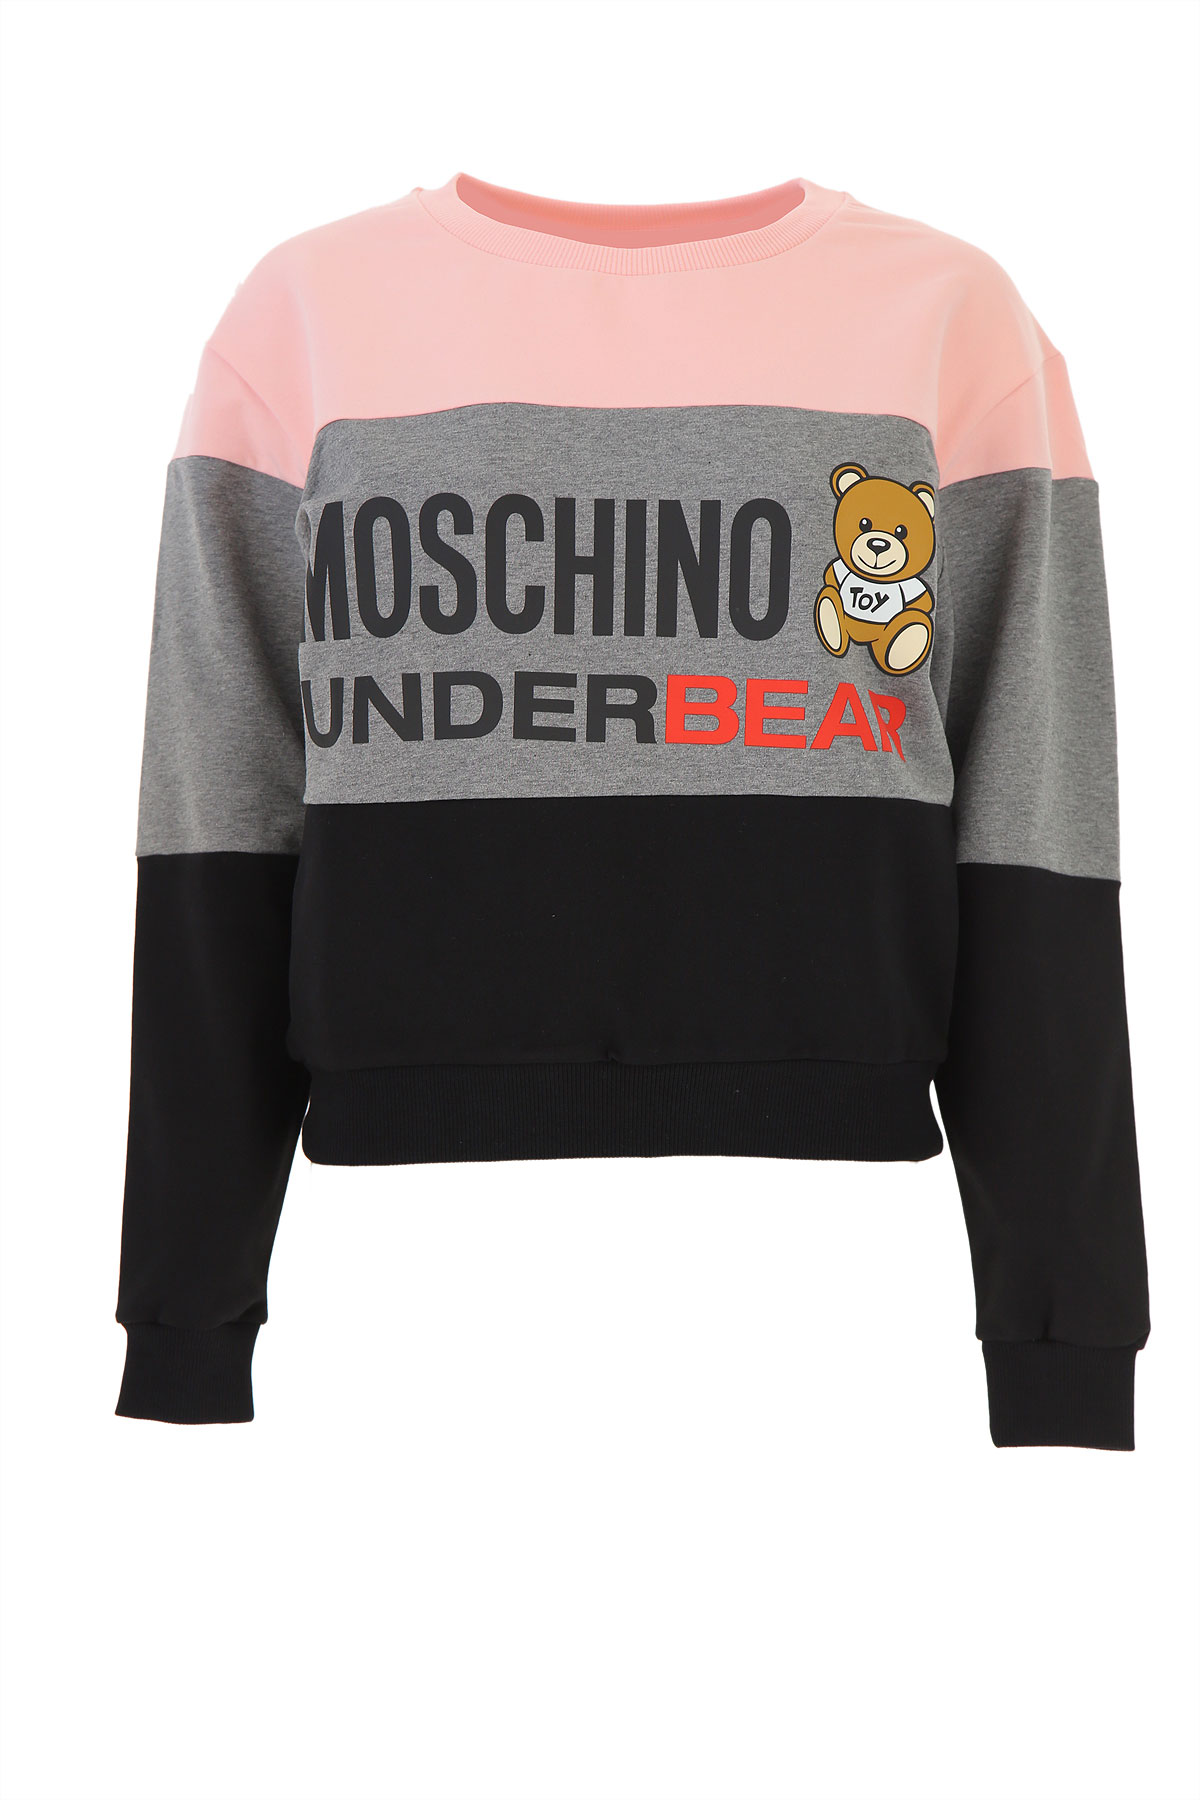 Moschino Sweatshirt für Damen, Kapuzenpulli, Hoodie, Sweats Günstig im Sale, Pink, Baumwolle, 2017, 38 44 M